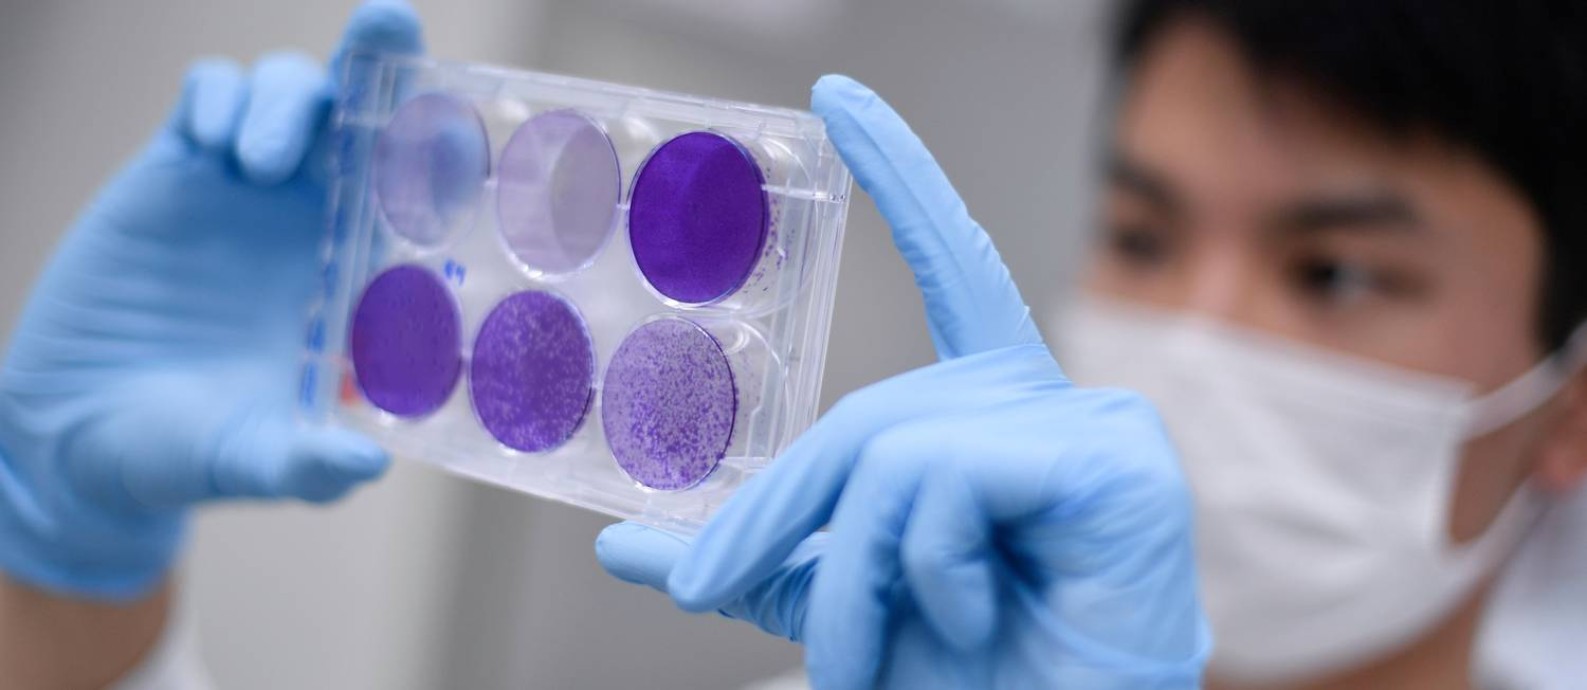 Pesquisador trabalha na replicação do vírus da Covid-19 para pesquisa que vai desenvolver a vacina contra a doença. Foto: DOUGLAS MAGNO / AFP